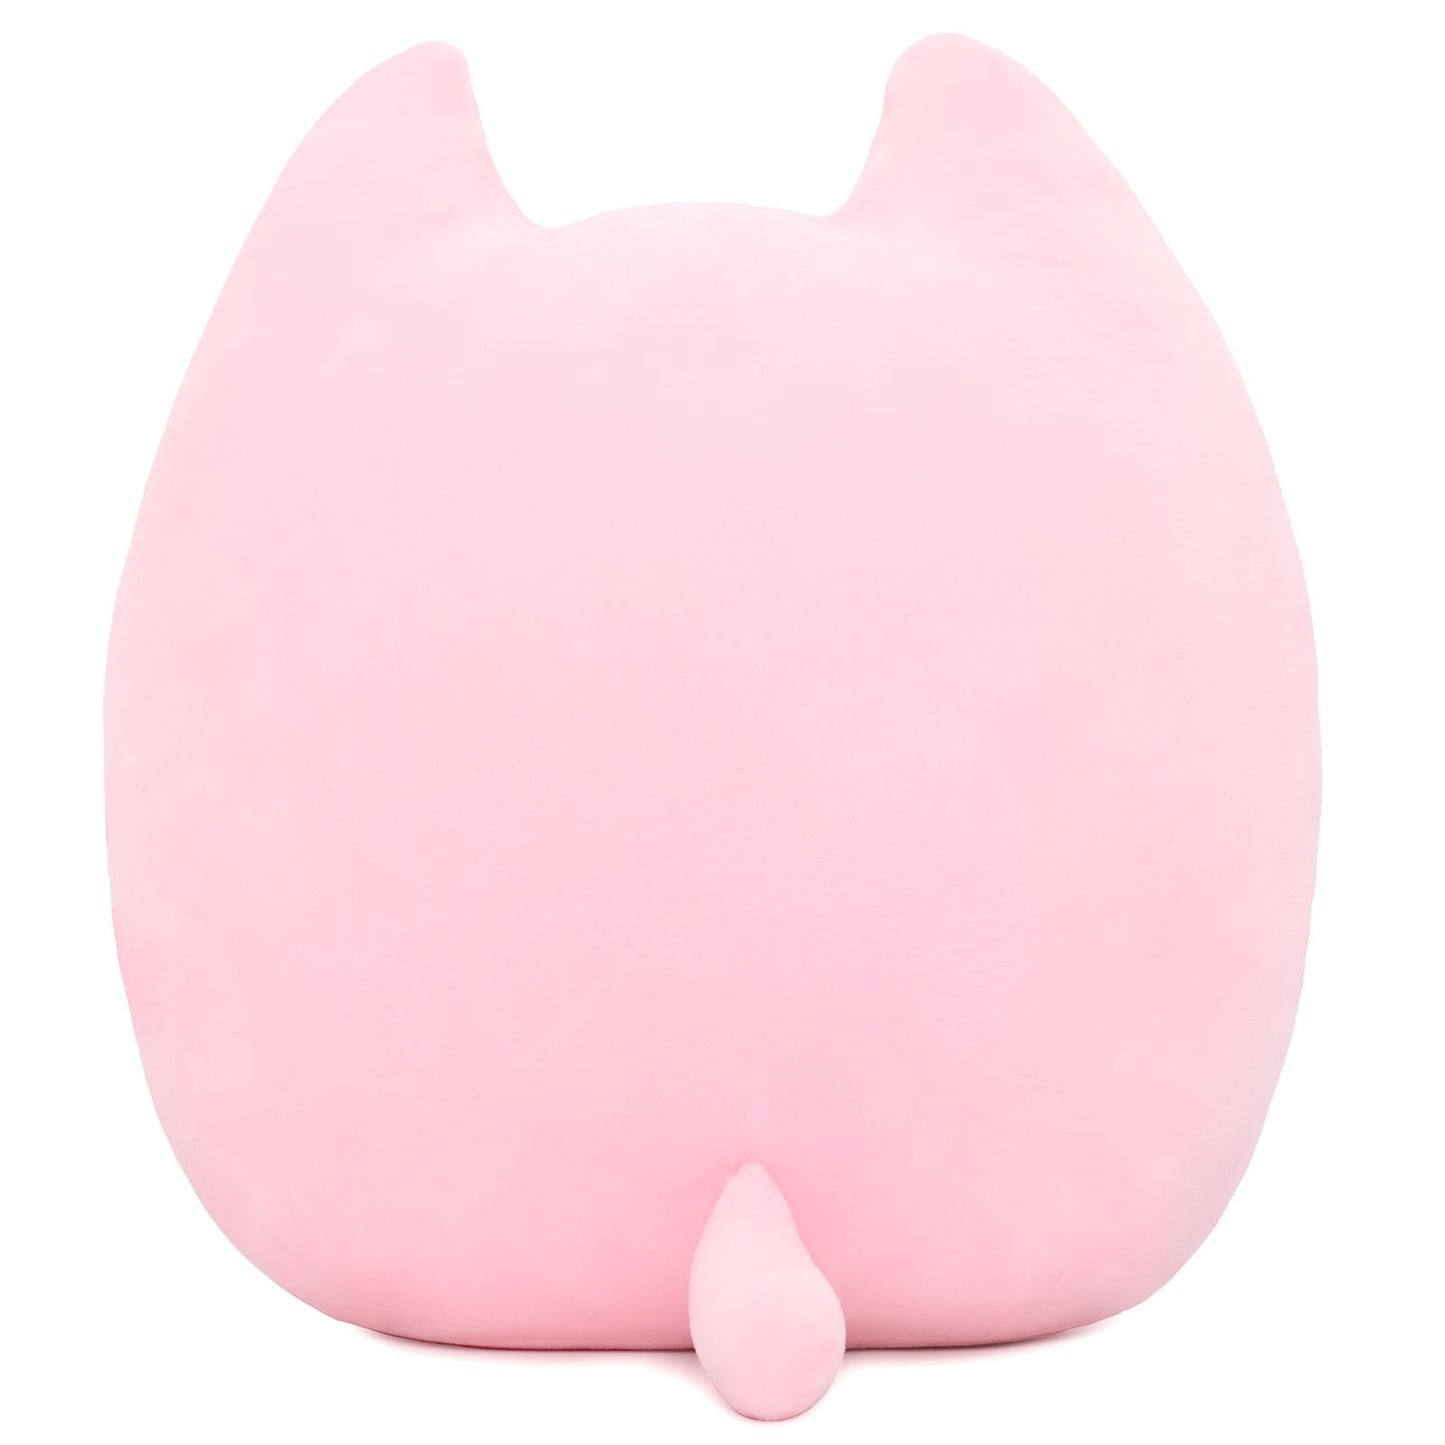 Kawaii Cat Throw Pillow, Pink, 12 Inches